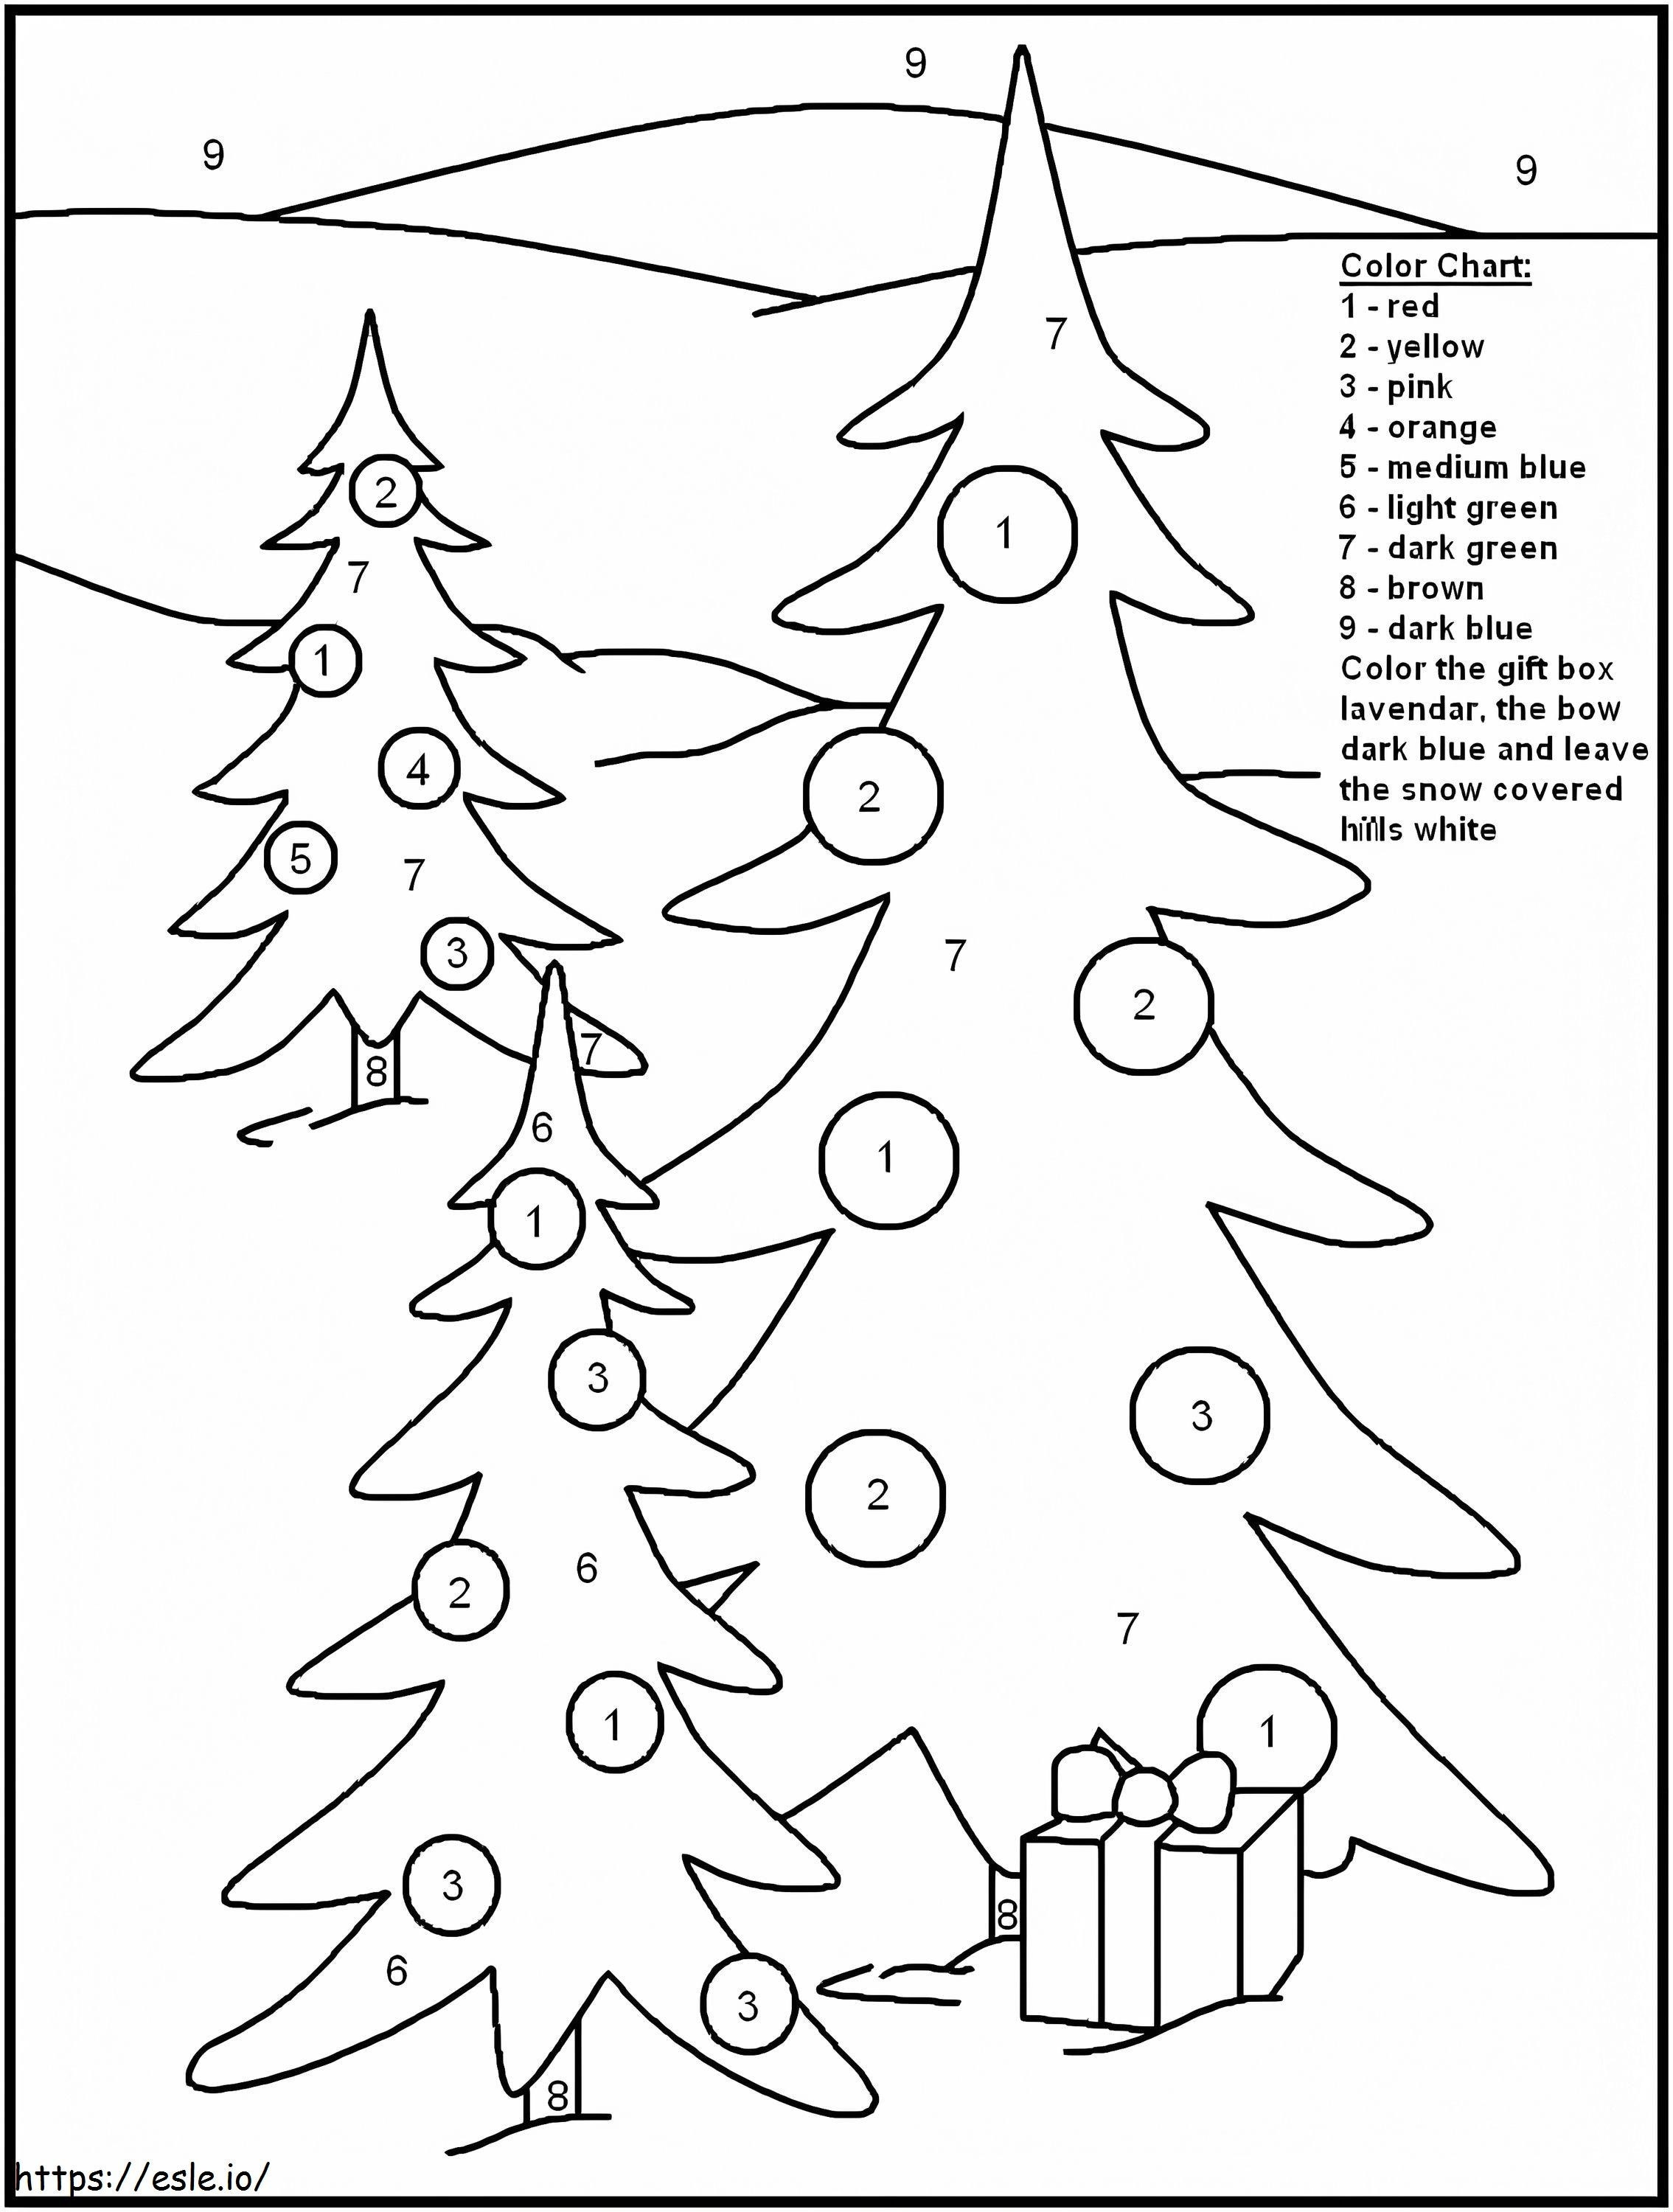 Colorear Árboles De Navidad Por Números para colorear